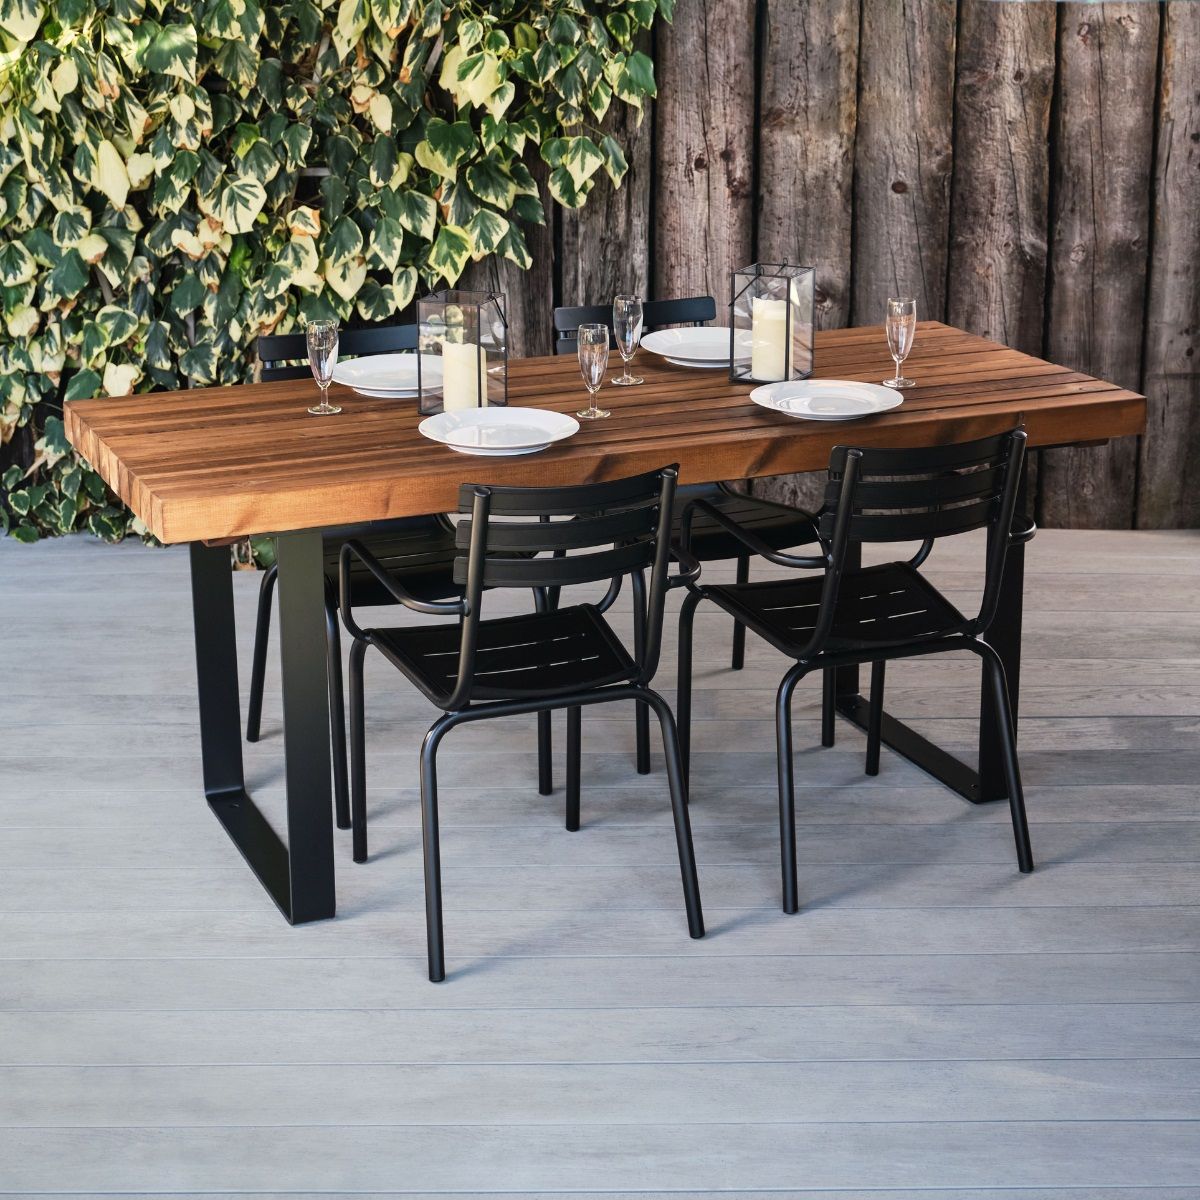 Rectangular Outdoor Table Wood & Steel | Industrial Look For Pubs & Bars Regarding Outdoor Furniture Metal Rectangular Tables (Photo 11 of 15)